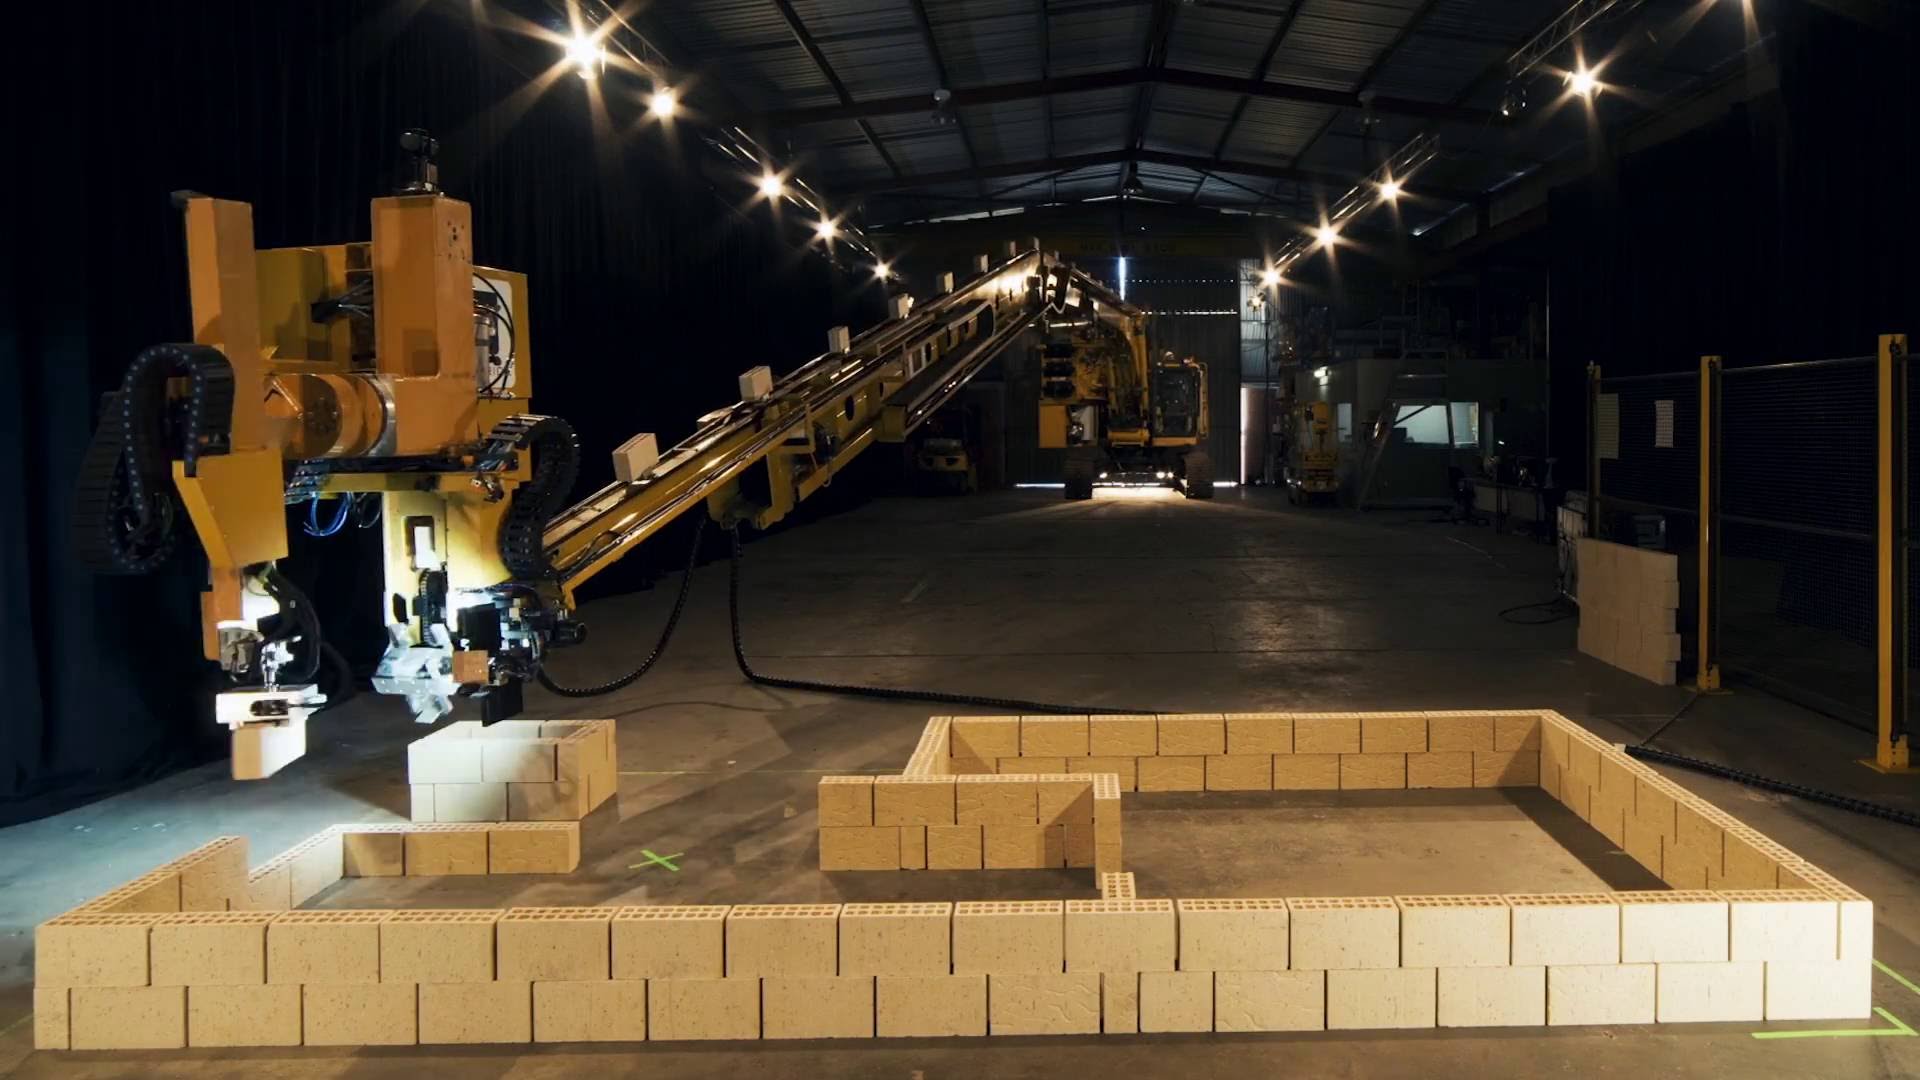 Fastbrick Robotics показали в деле нового робота-каменщика